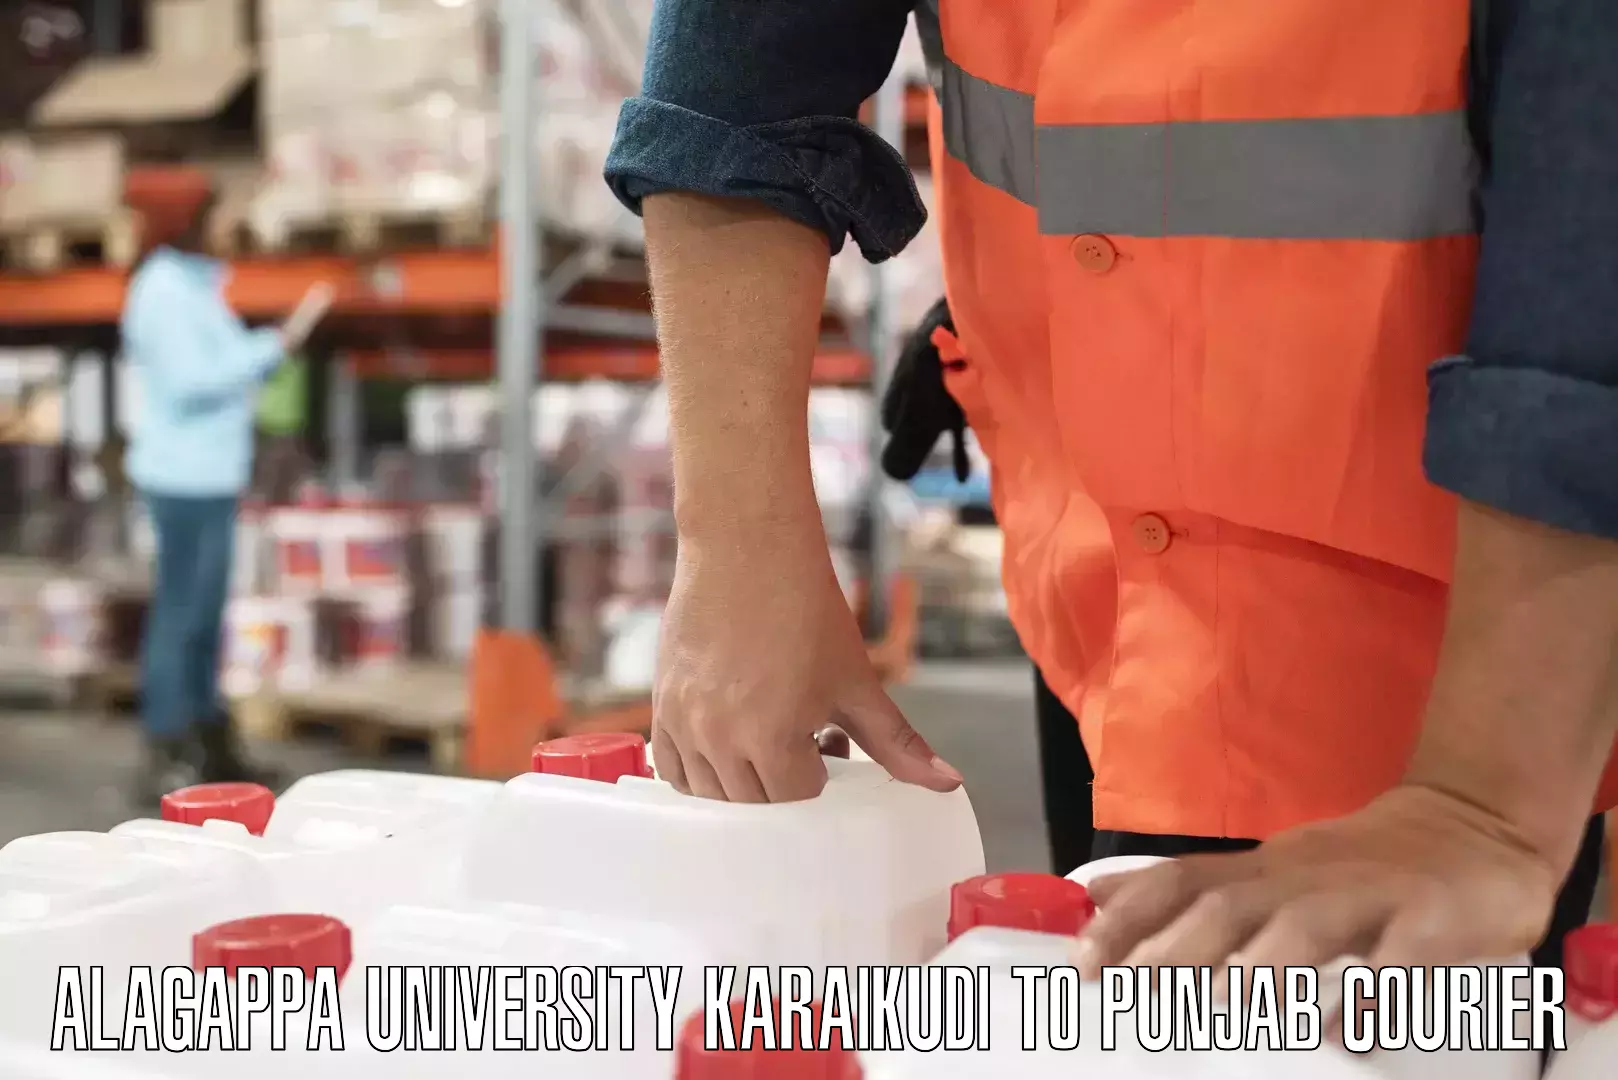 Courier insurance Alagappa University Karaikudi to Punjab